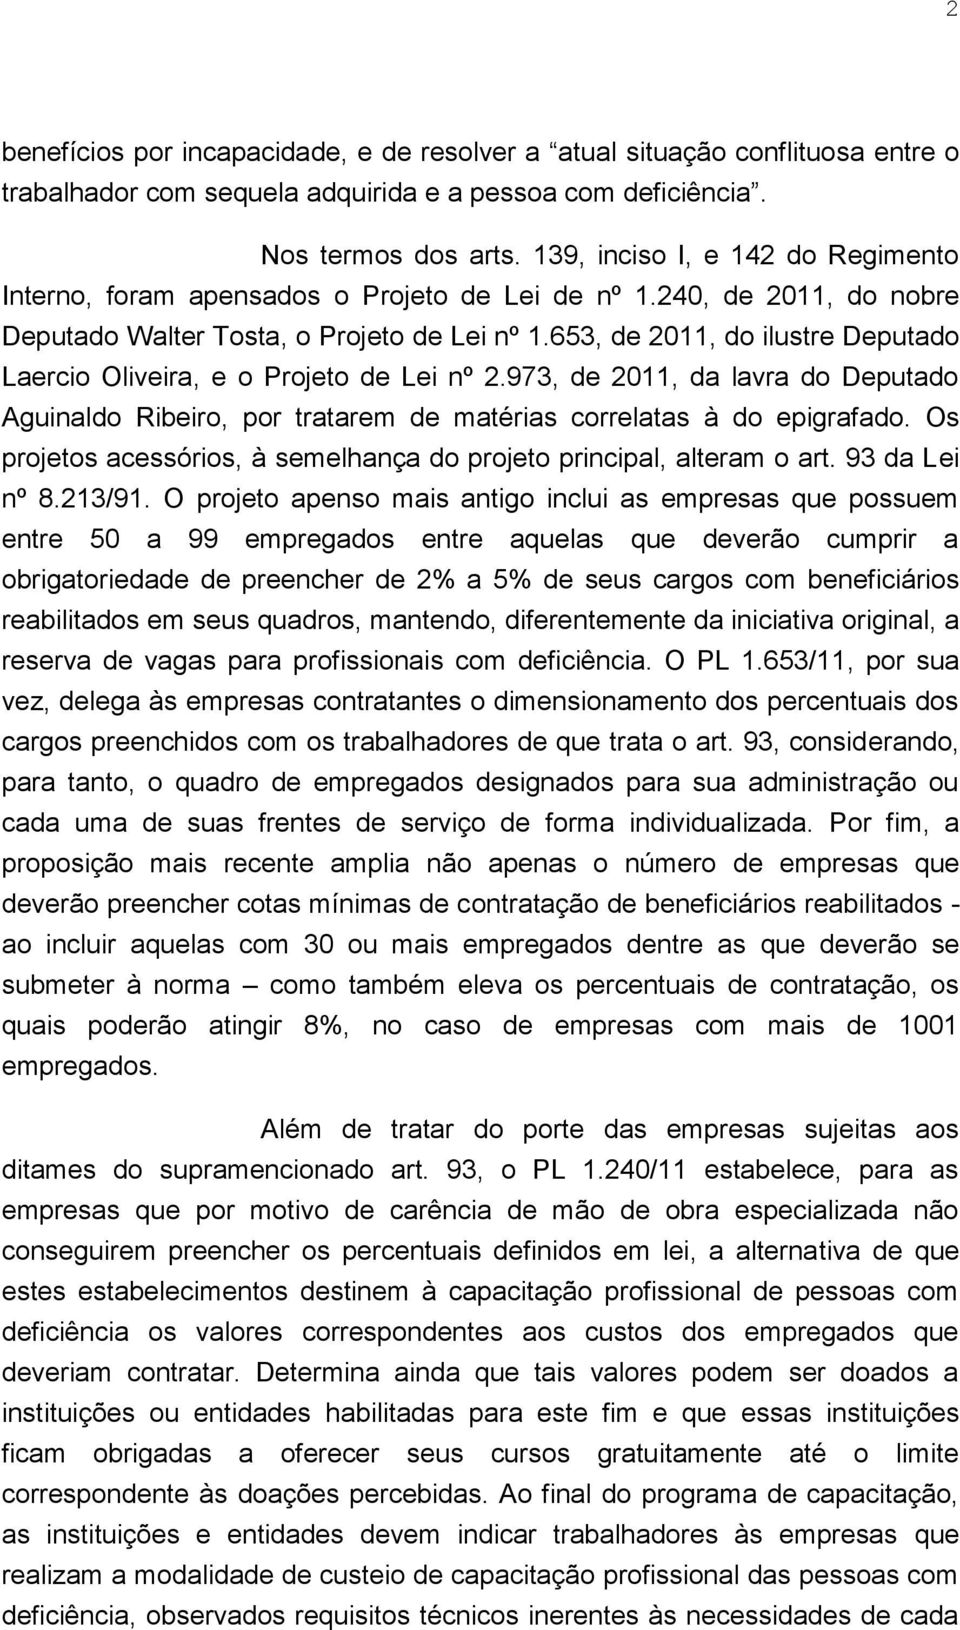 653, de 2011, do ilustre Deputado Laercio Oliveira, e o Projeto de Lei nº 2.973, de 2011, da lavra do Deputado Aguinaldo Ribeiro, por tratarem de matérias correlatas à do epigrafado.